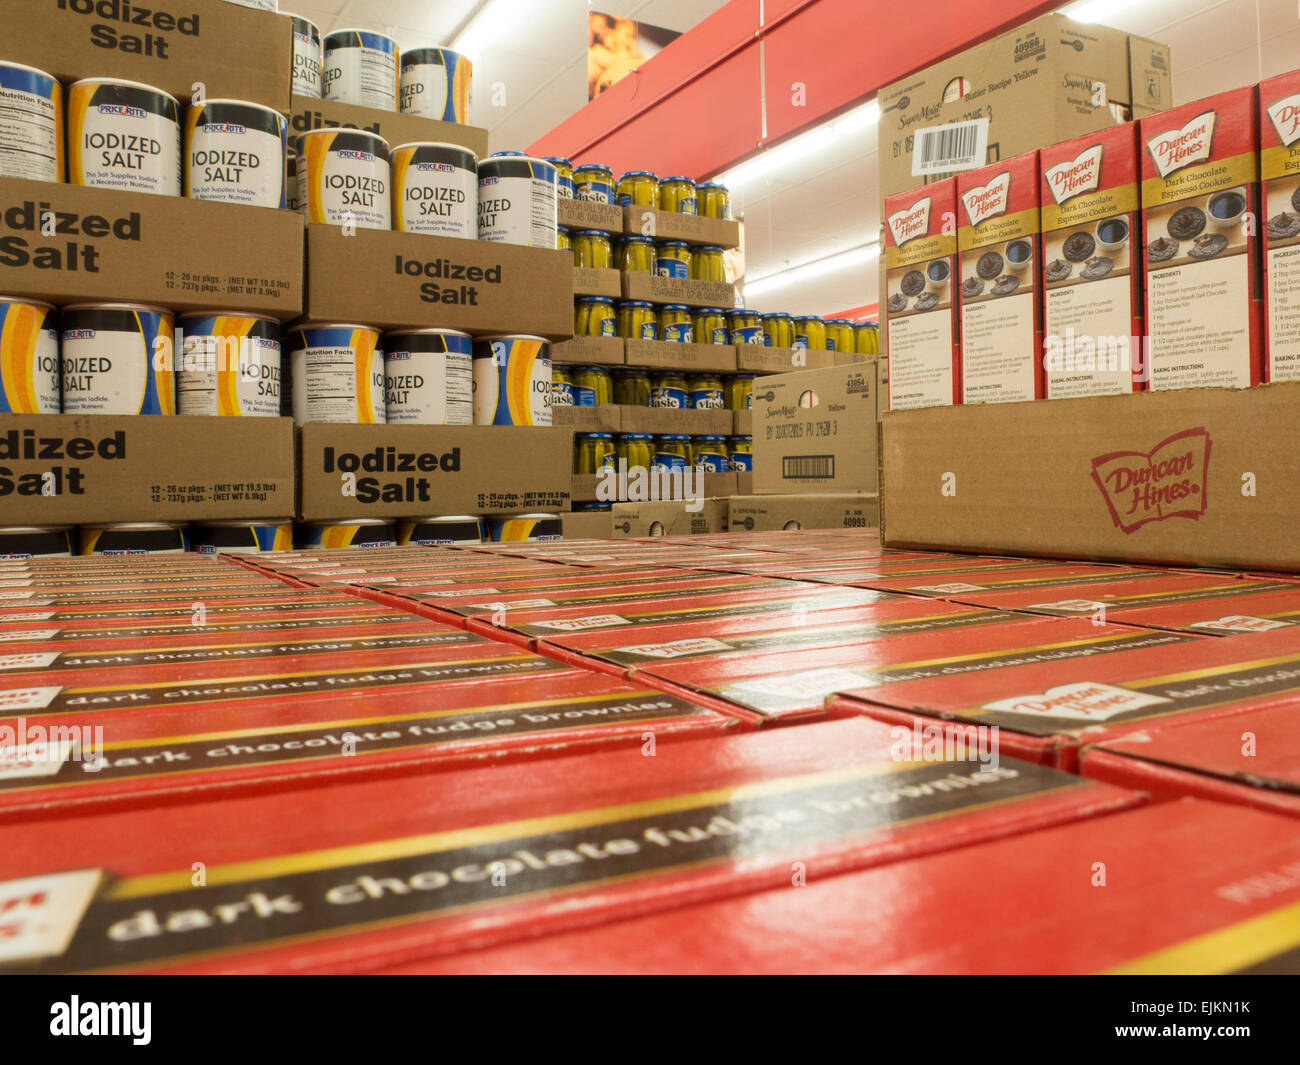 Backmischungen und Salz-Boxen sind für den Verkauf in einem Lager-Stil Supermarkt gestapelt... Stockfoto